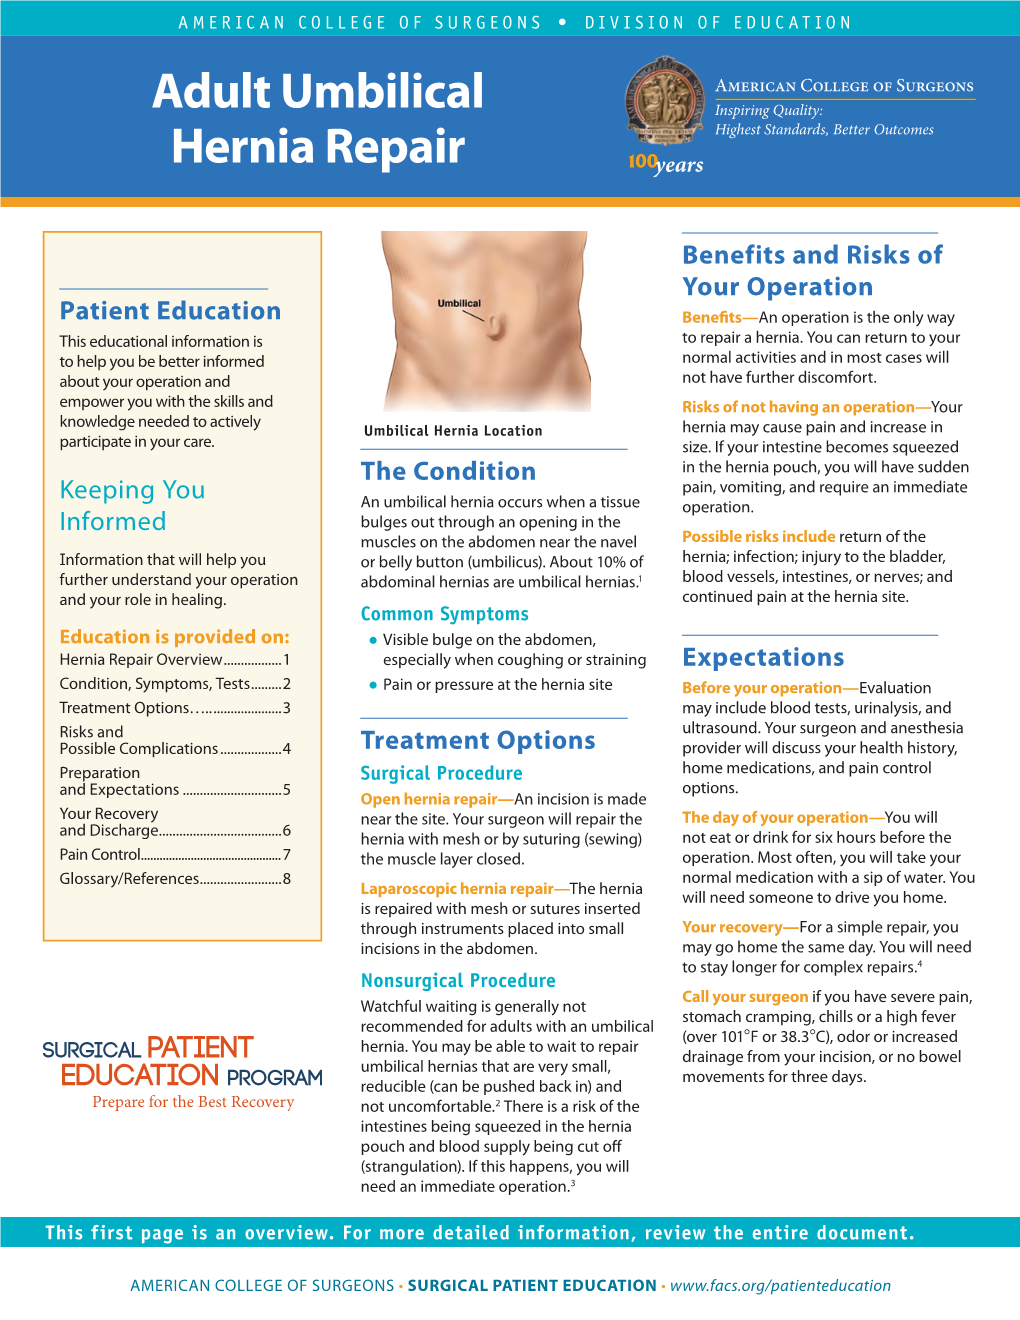 Adult Umbilical Hernia Repair